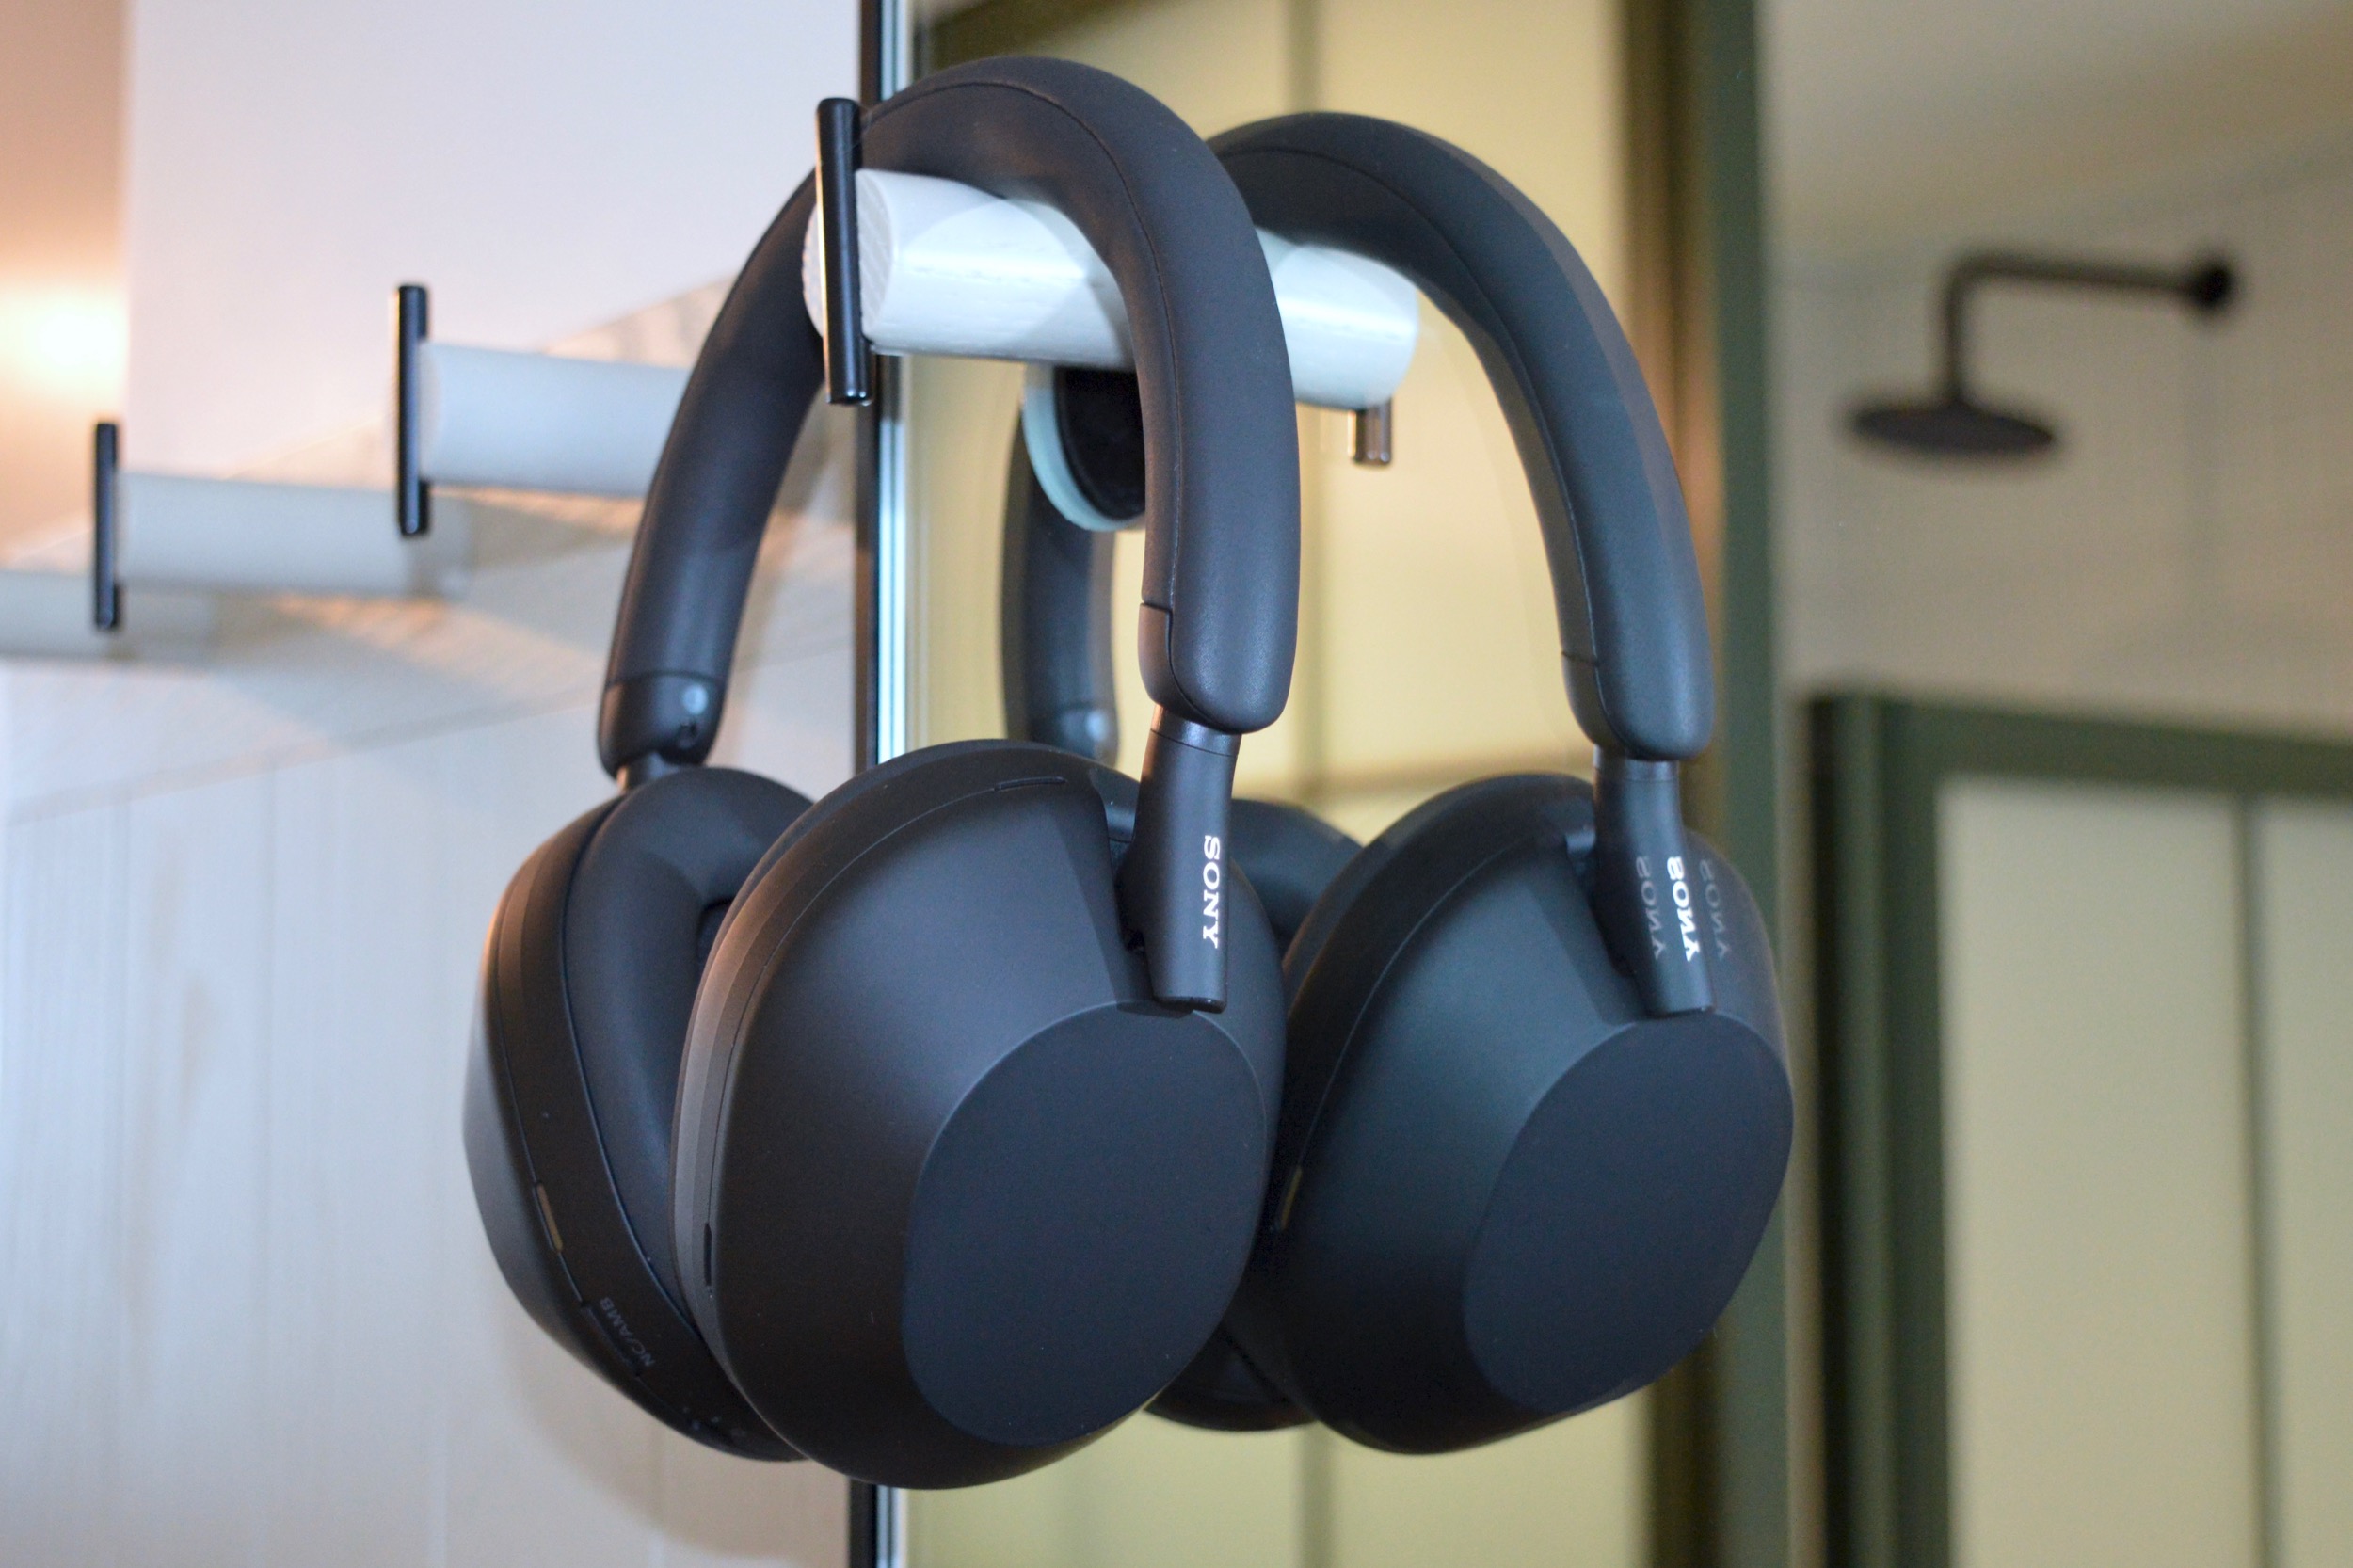 Best Sony headphone deals: Save on top headphones & earbuds